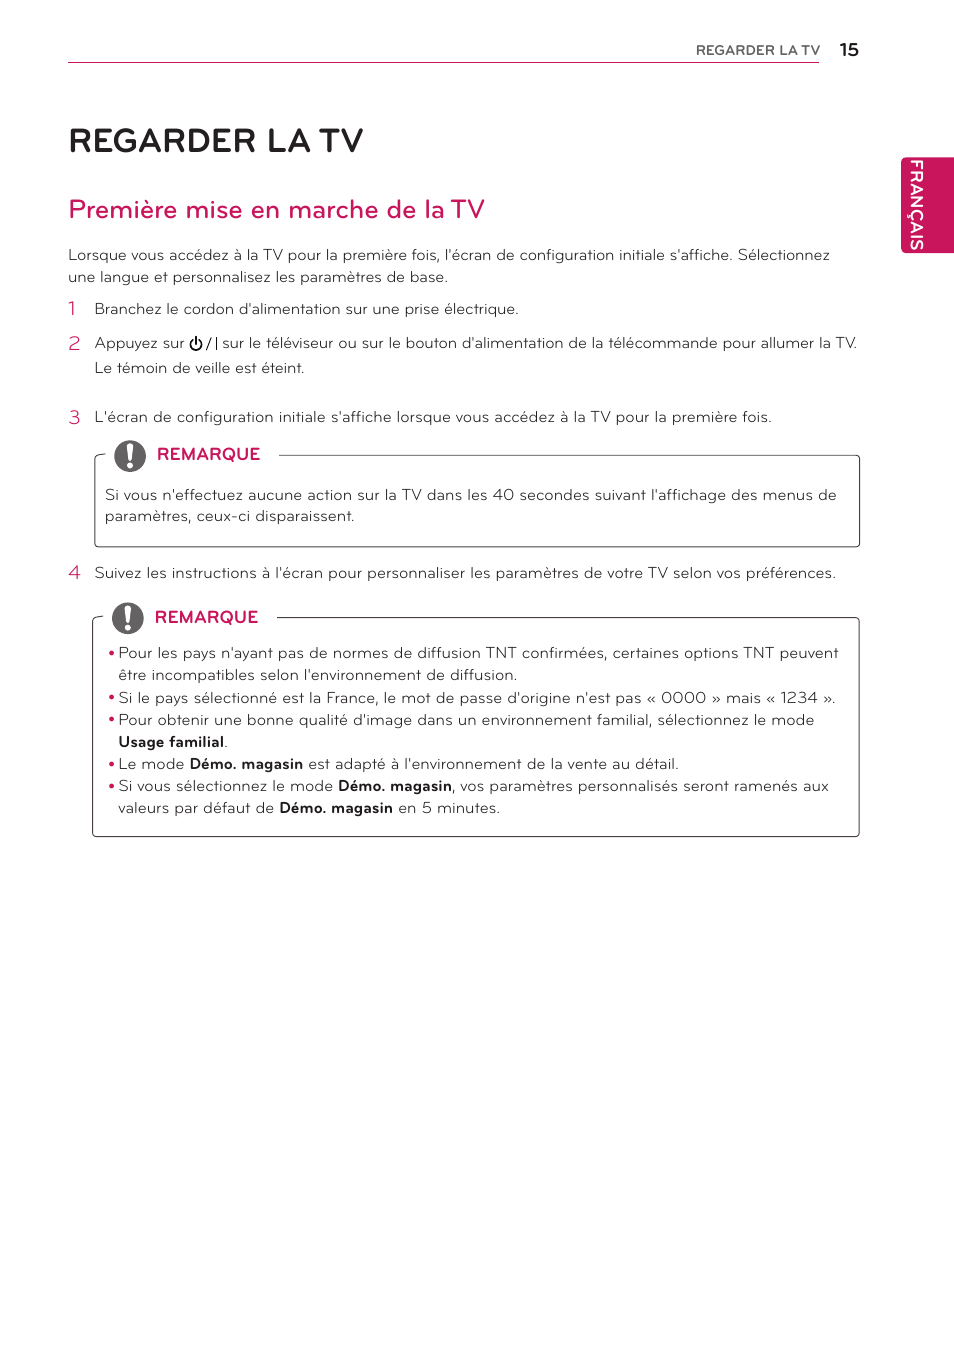 Regarder la tv, Première mise en marche de la tv | LG 27MT93S-PZ Manuel d'utilisation | Page 15 / 49